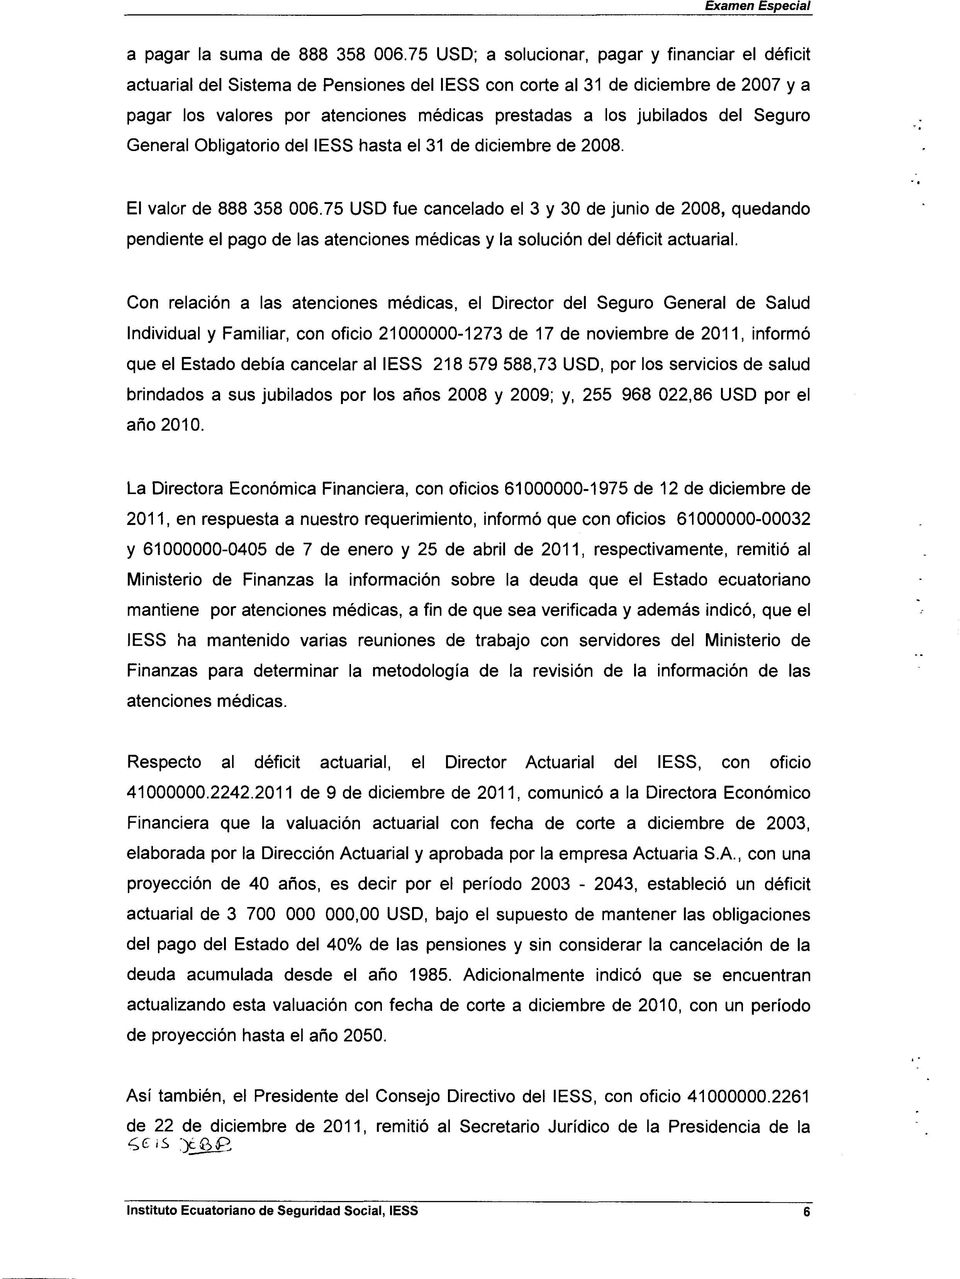 jubilados del Seguro General Obligatorio del IESS hasta el 31 de diciembre de 2008. El valor de 888 358 006.